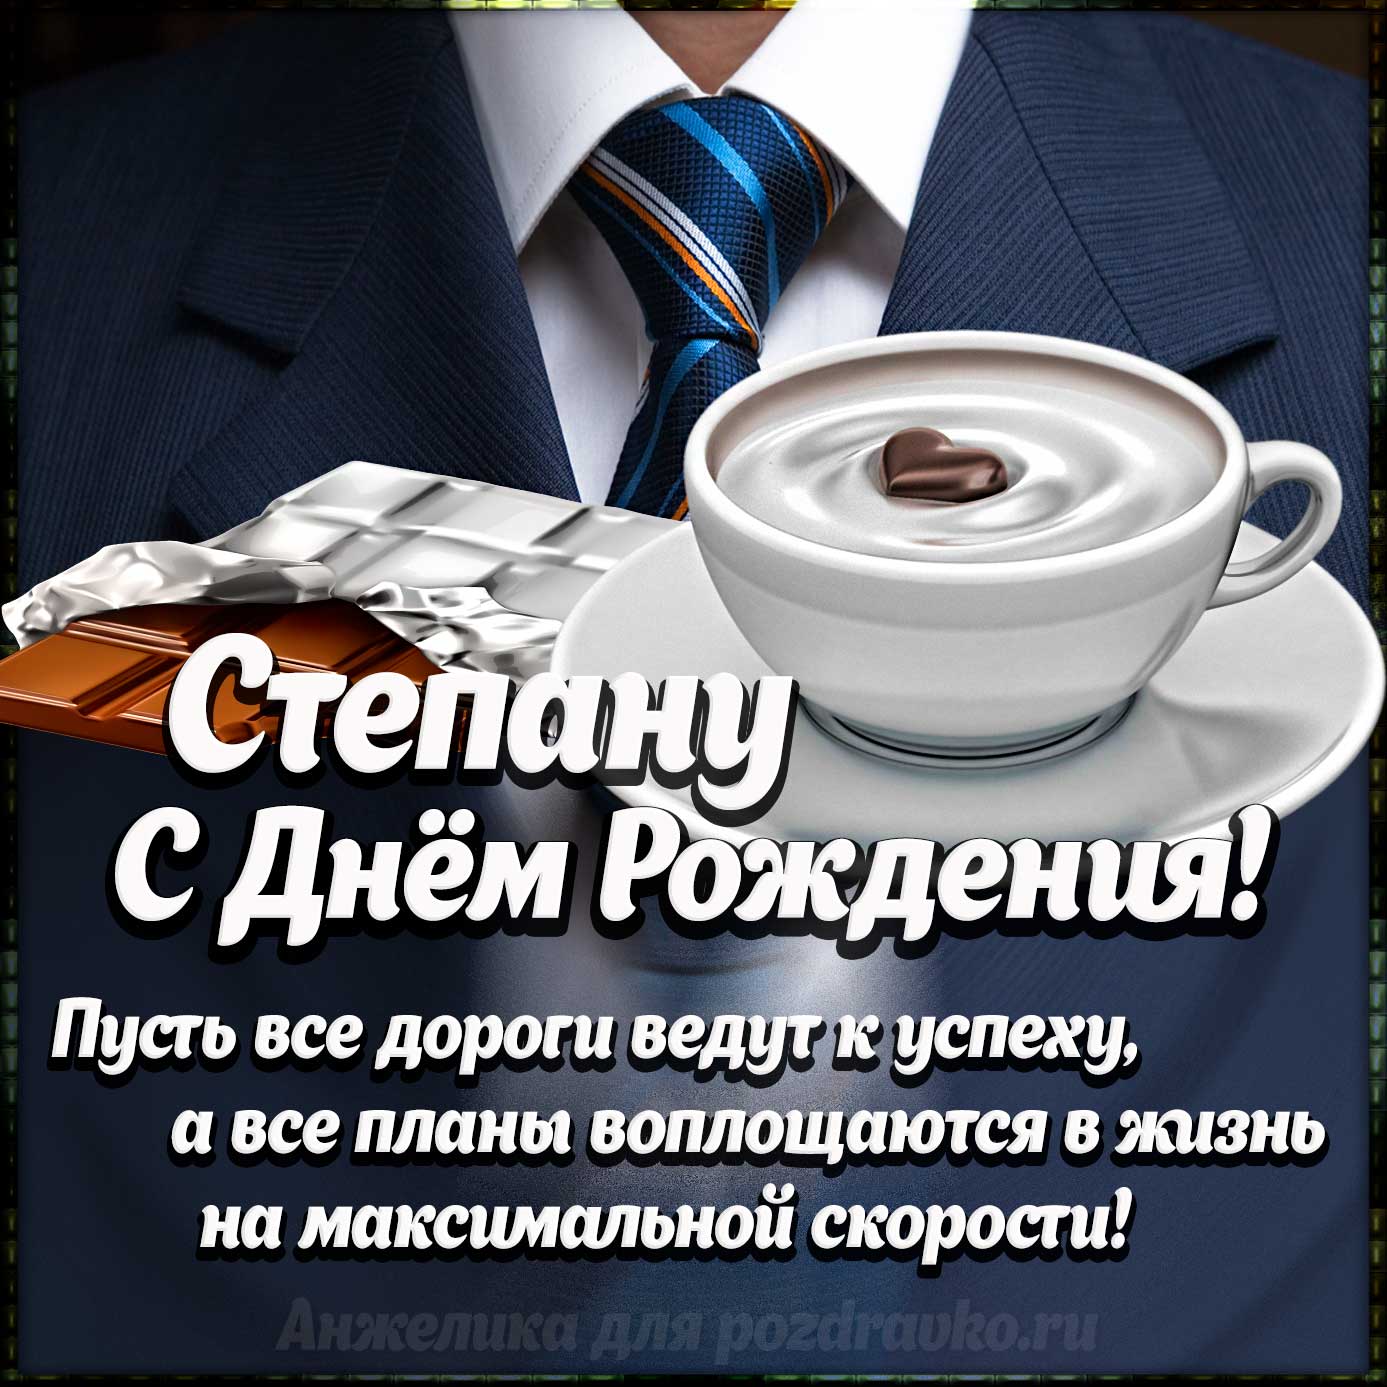 Открытка - Степану с Днем Рождения с галстуком, кофе и пожеланием. Скачать бесплатно или отправить картинку.